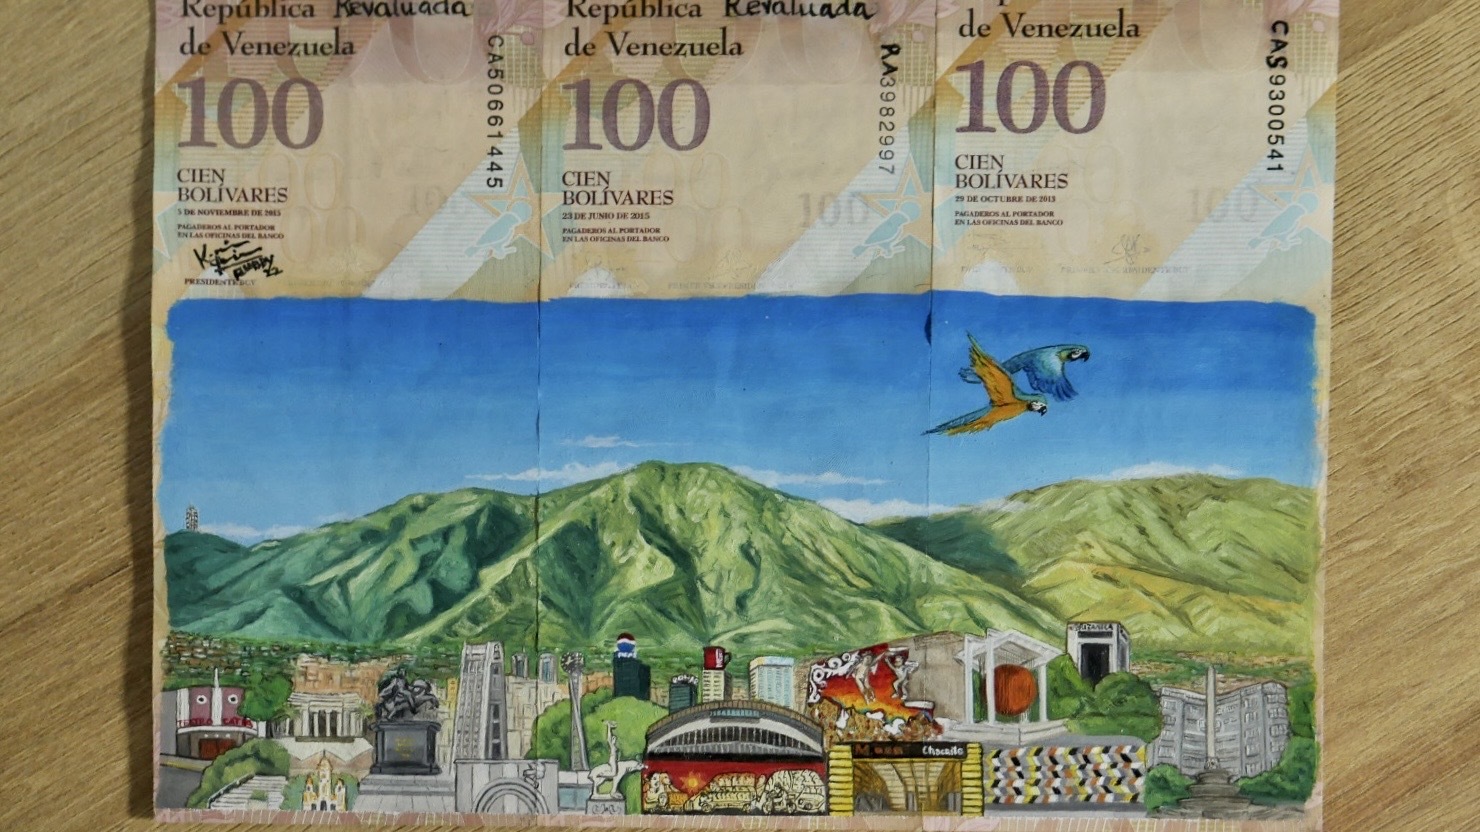 Serie de billetes que rinden tributo al paisaje de la ciudad de Caracas. (Foto por Vanessa Santana)